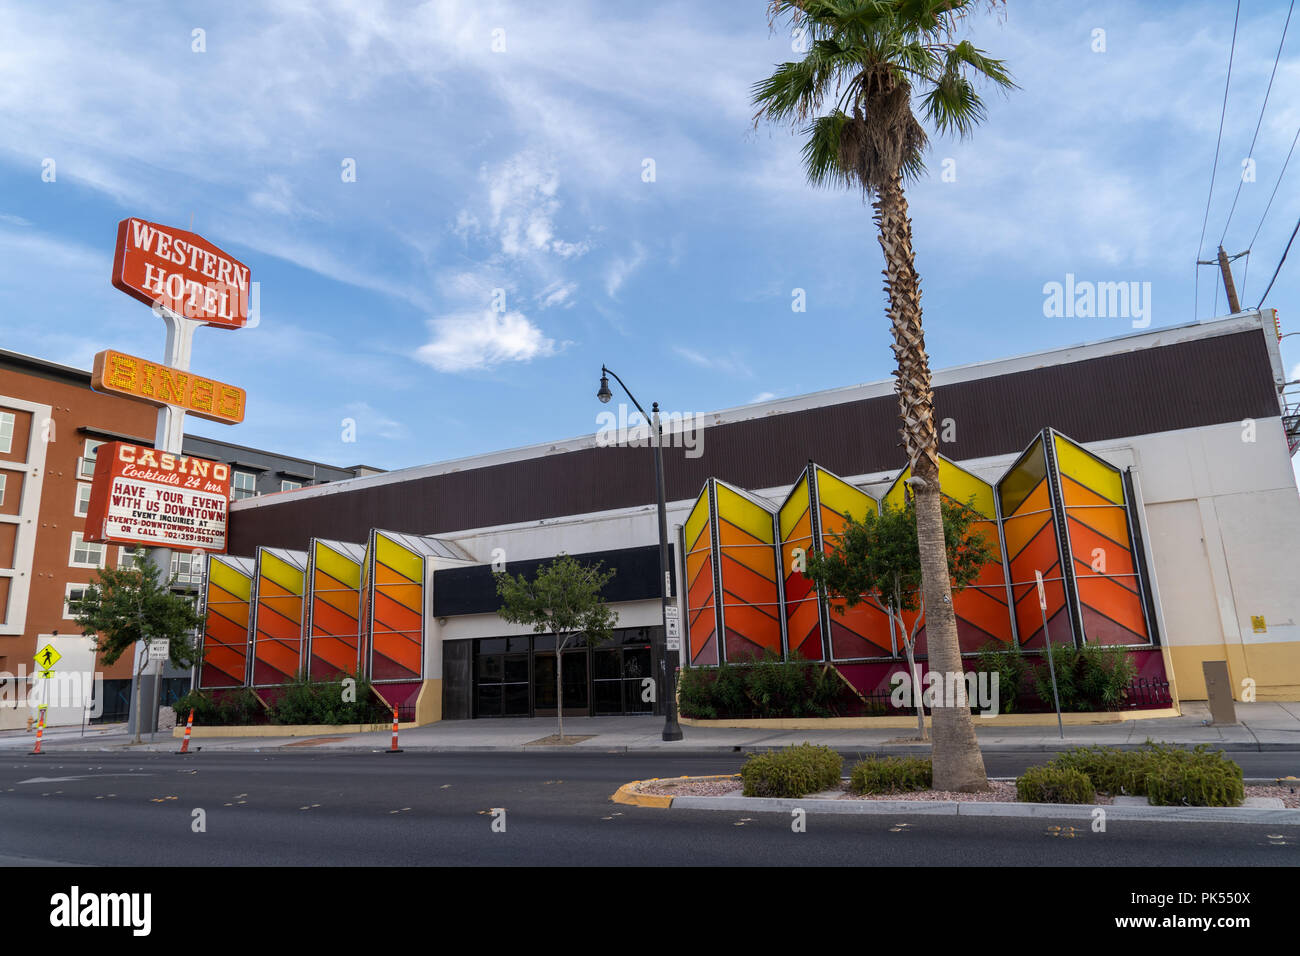 11. JULI 2018 Las Vegas, NV: Die alten Western Hotel Casino und Bingo Halle  sitzt leer auf der Fremont Street in der Innenstadt. Dies ist ein weiß Dive  Bar Casino frequ Stockfotografie - Alamy